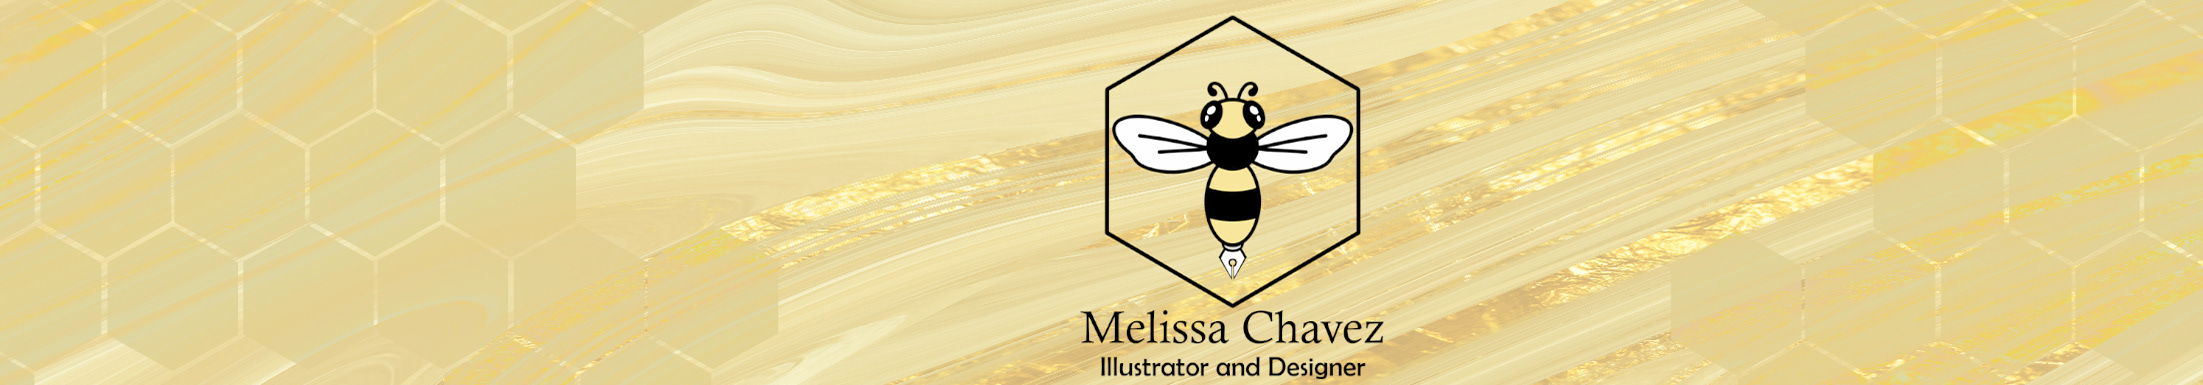 Profil-Banner von Melissa Chavez